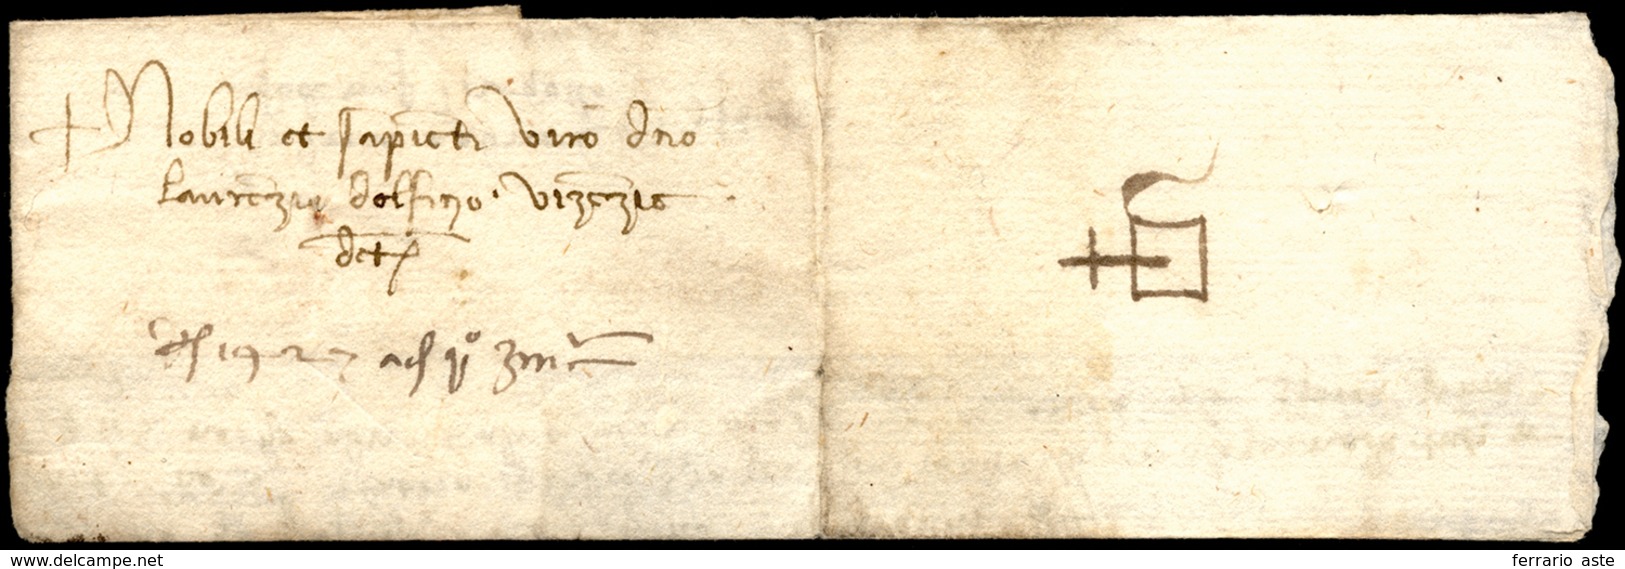 1450 Ca. - Lettera Completa Di Testo Per Venezia, Gilda Al Verso. ... - 1. ...-1850 Vorphilatelie